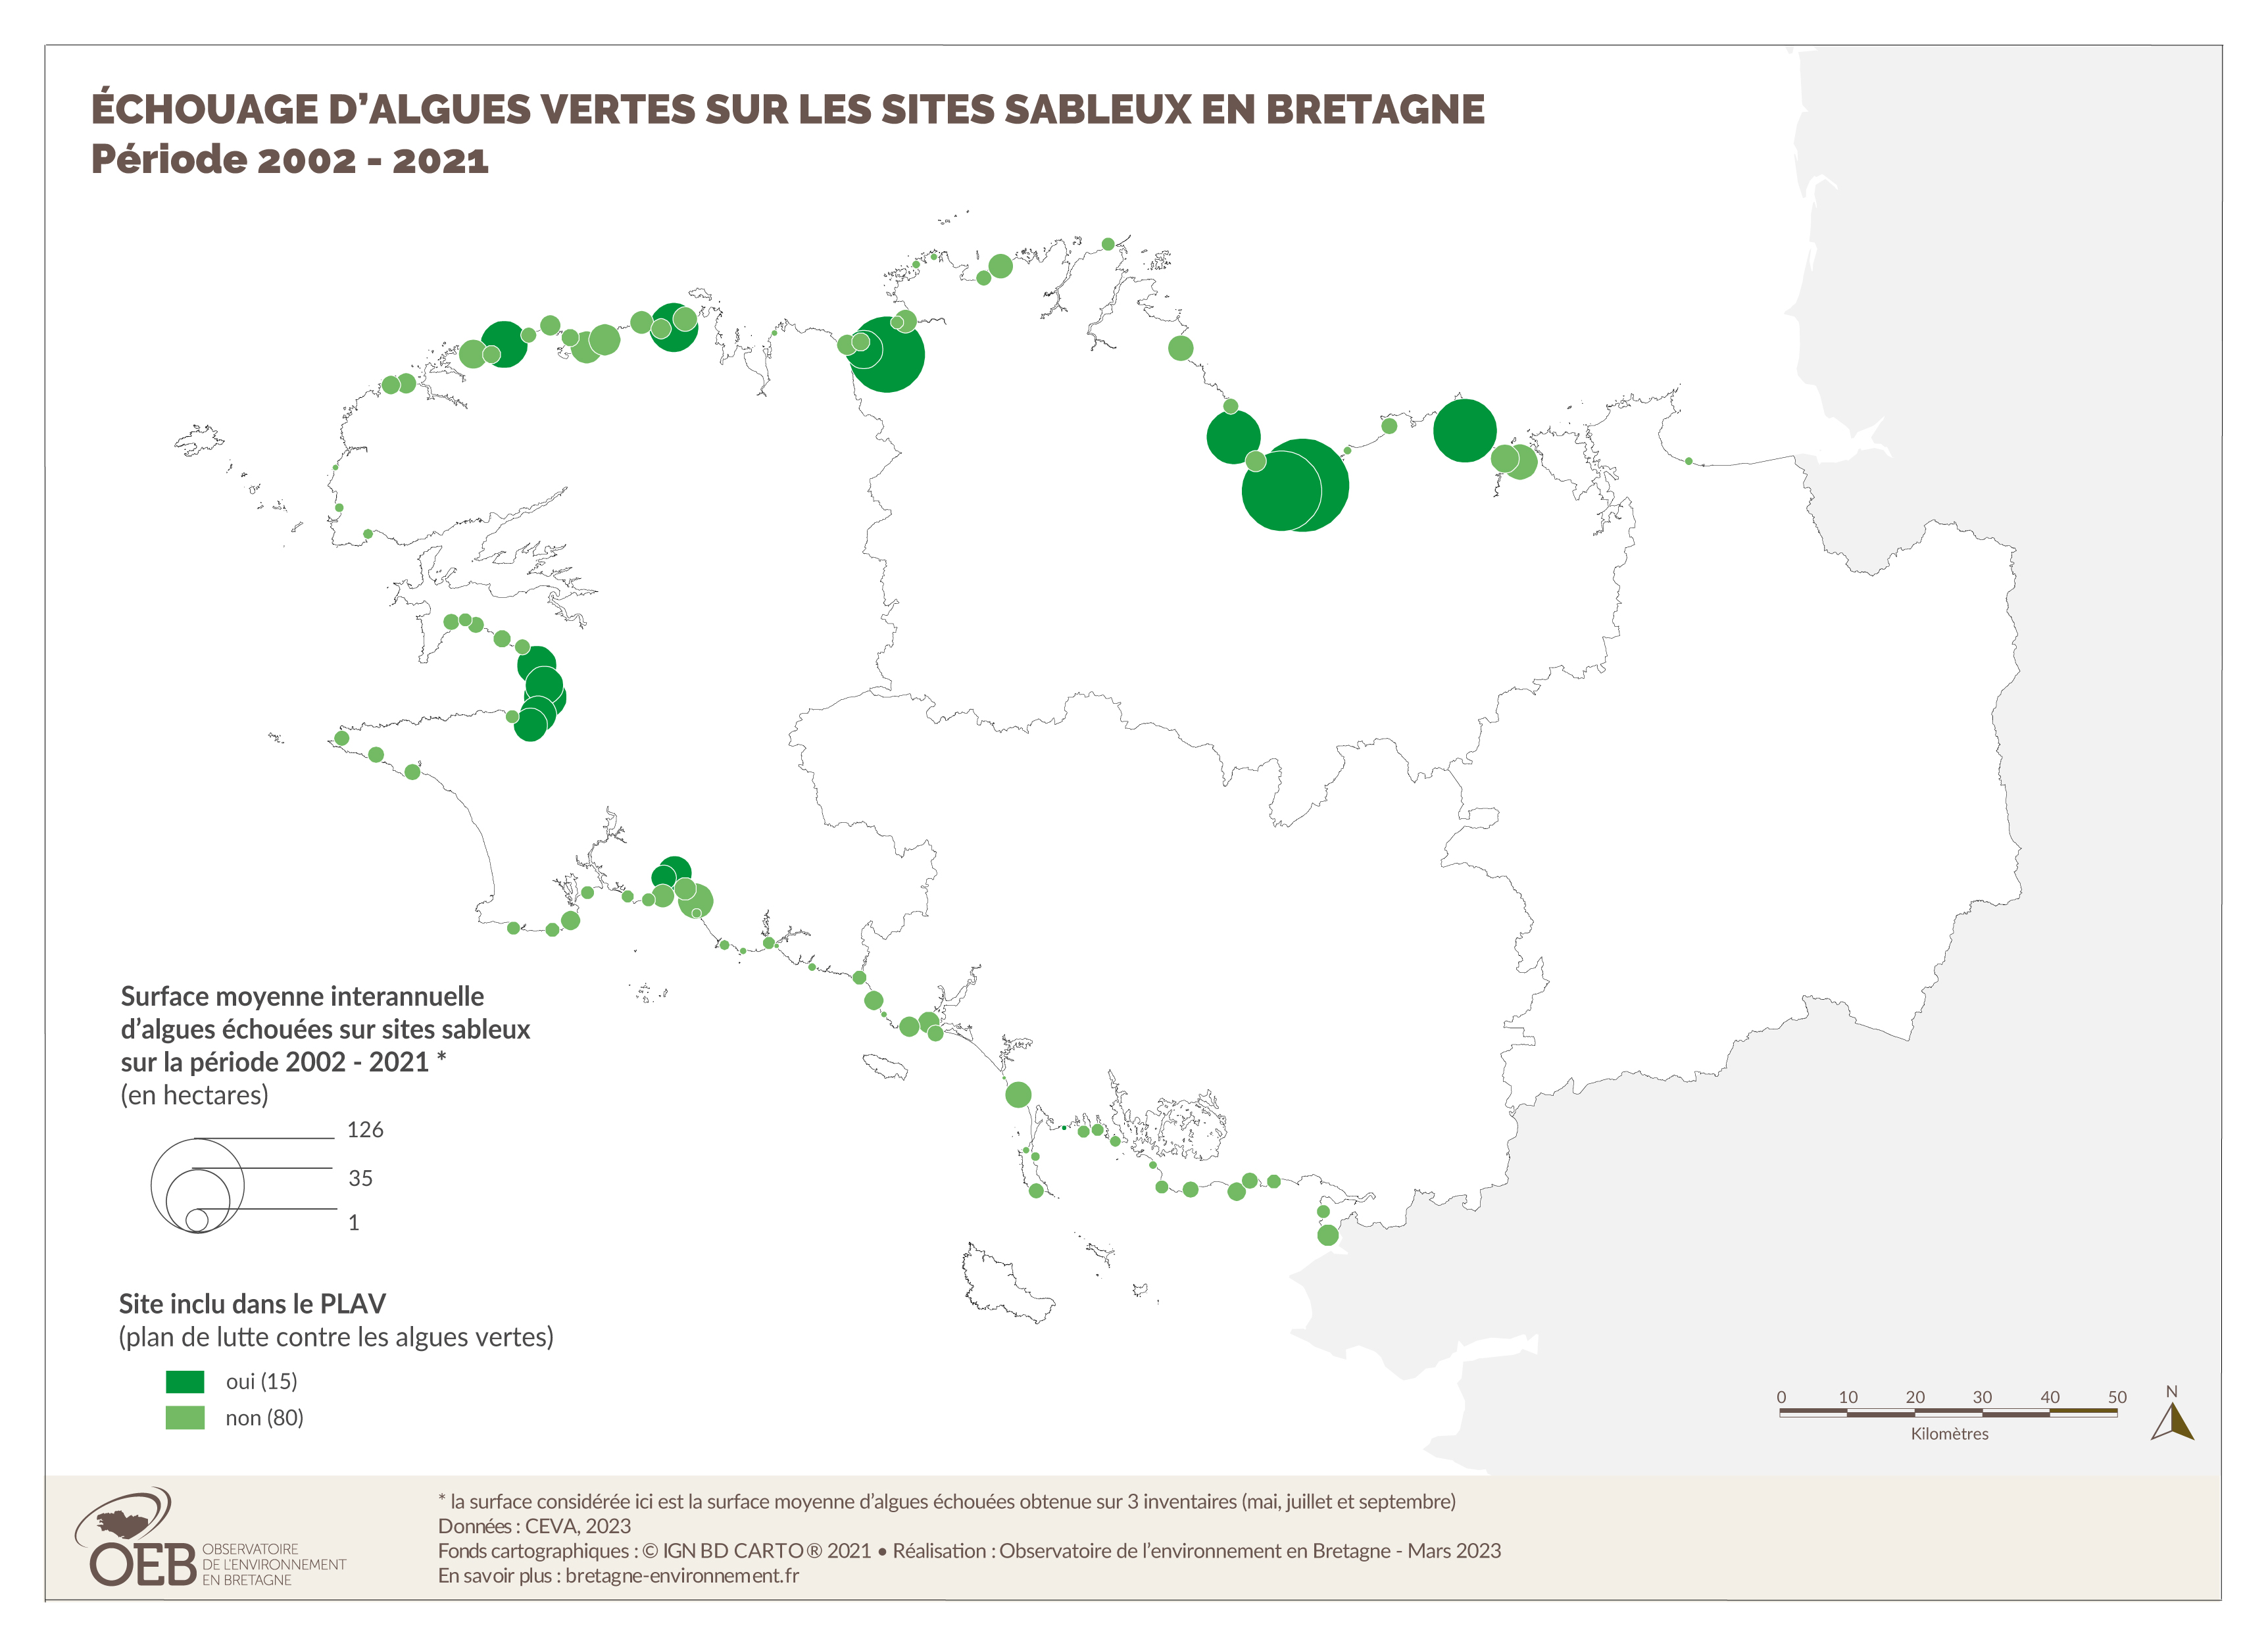 Échouage d'algues vertes sur les sites sableux en Bretagne - Période 2002-2021